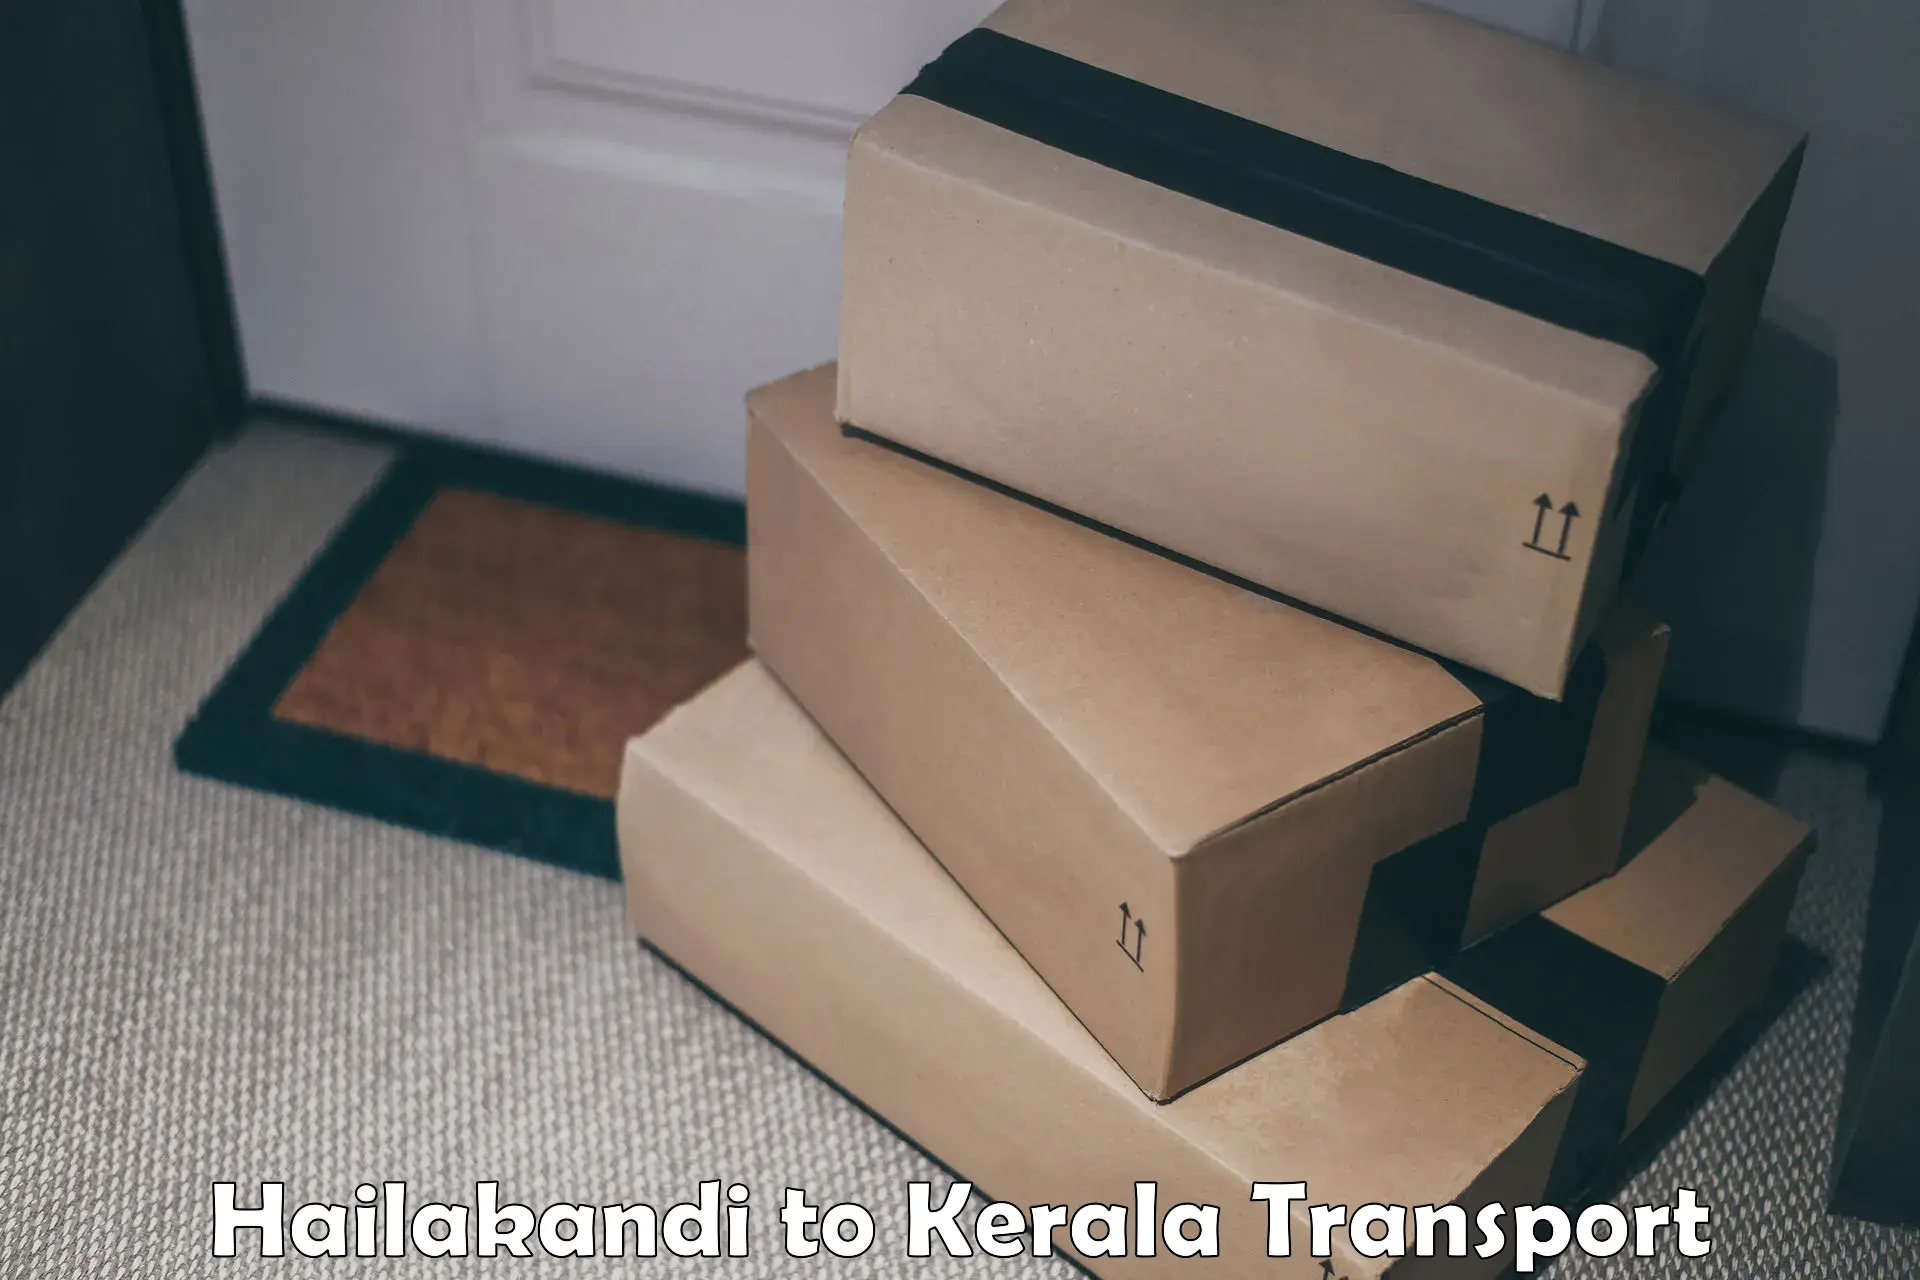 Cargo transport services Hailakandi to Kerala